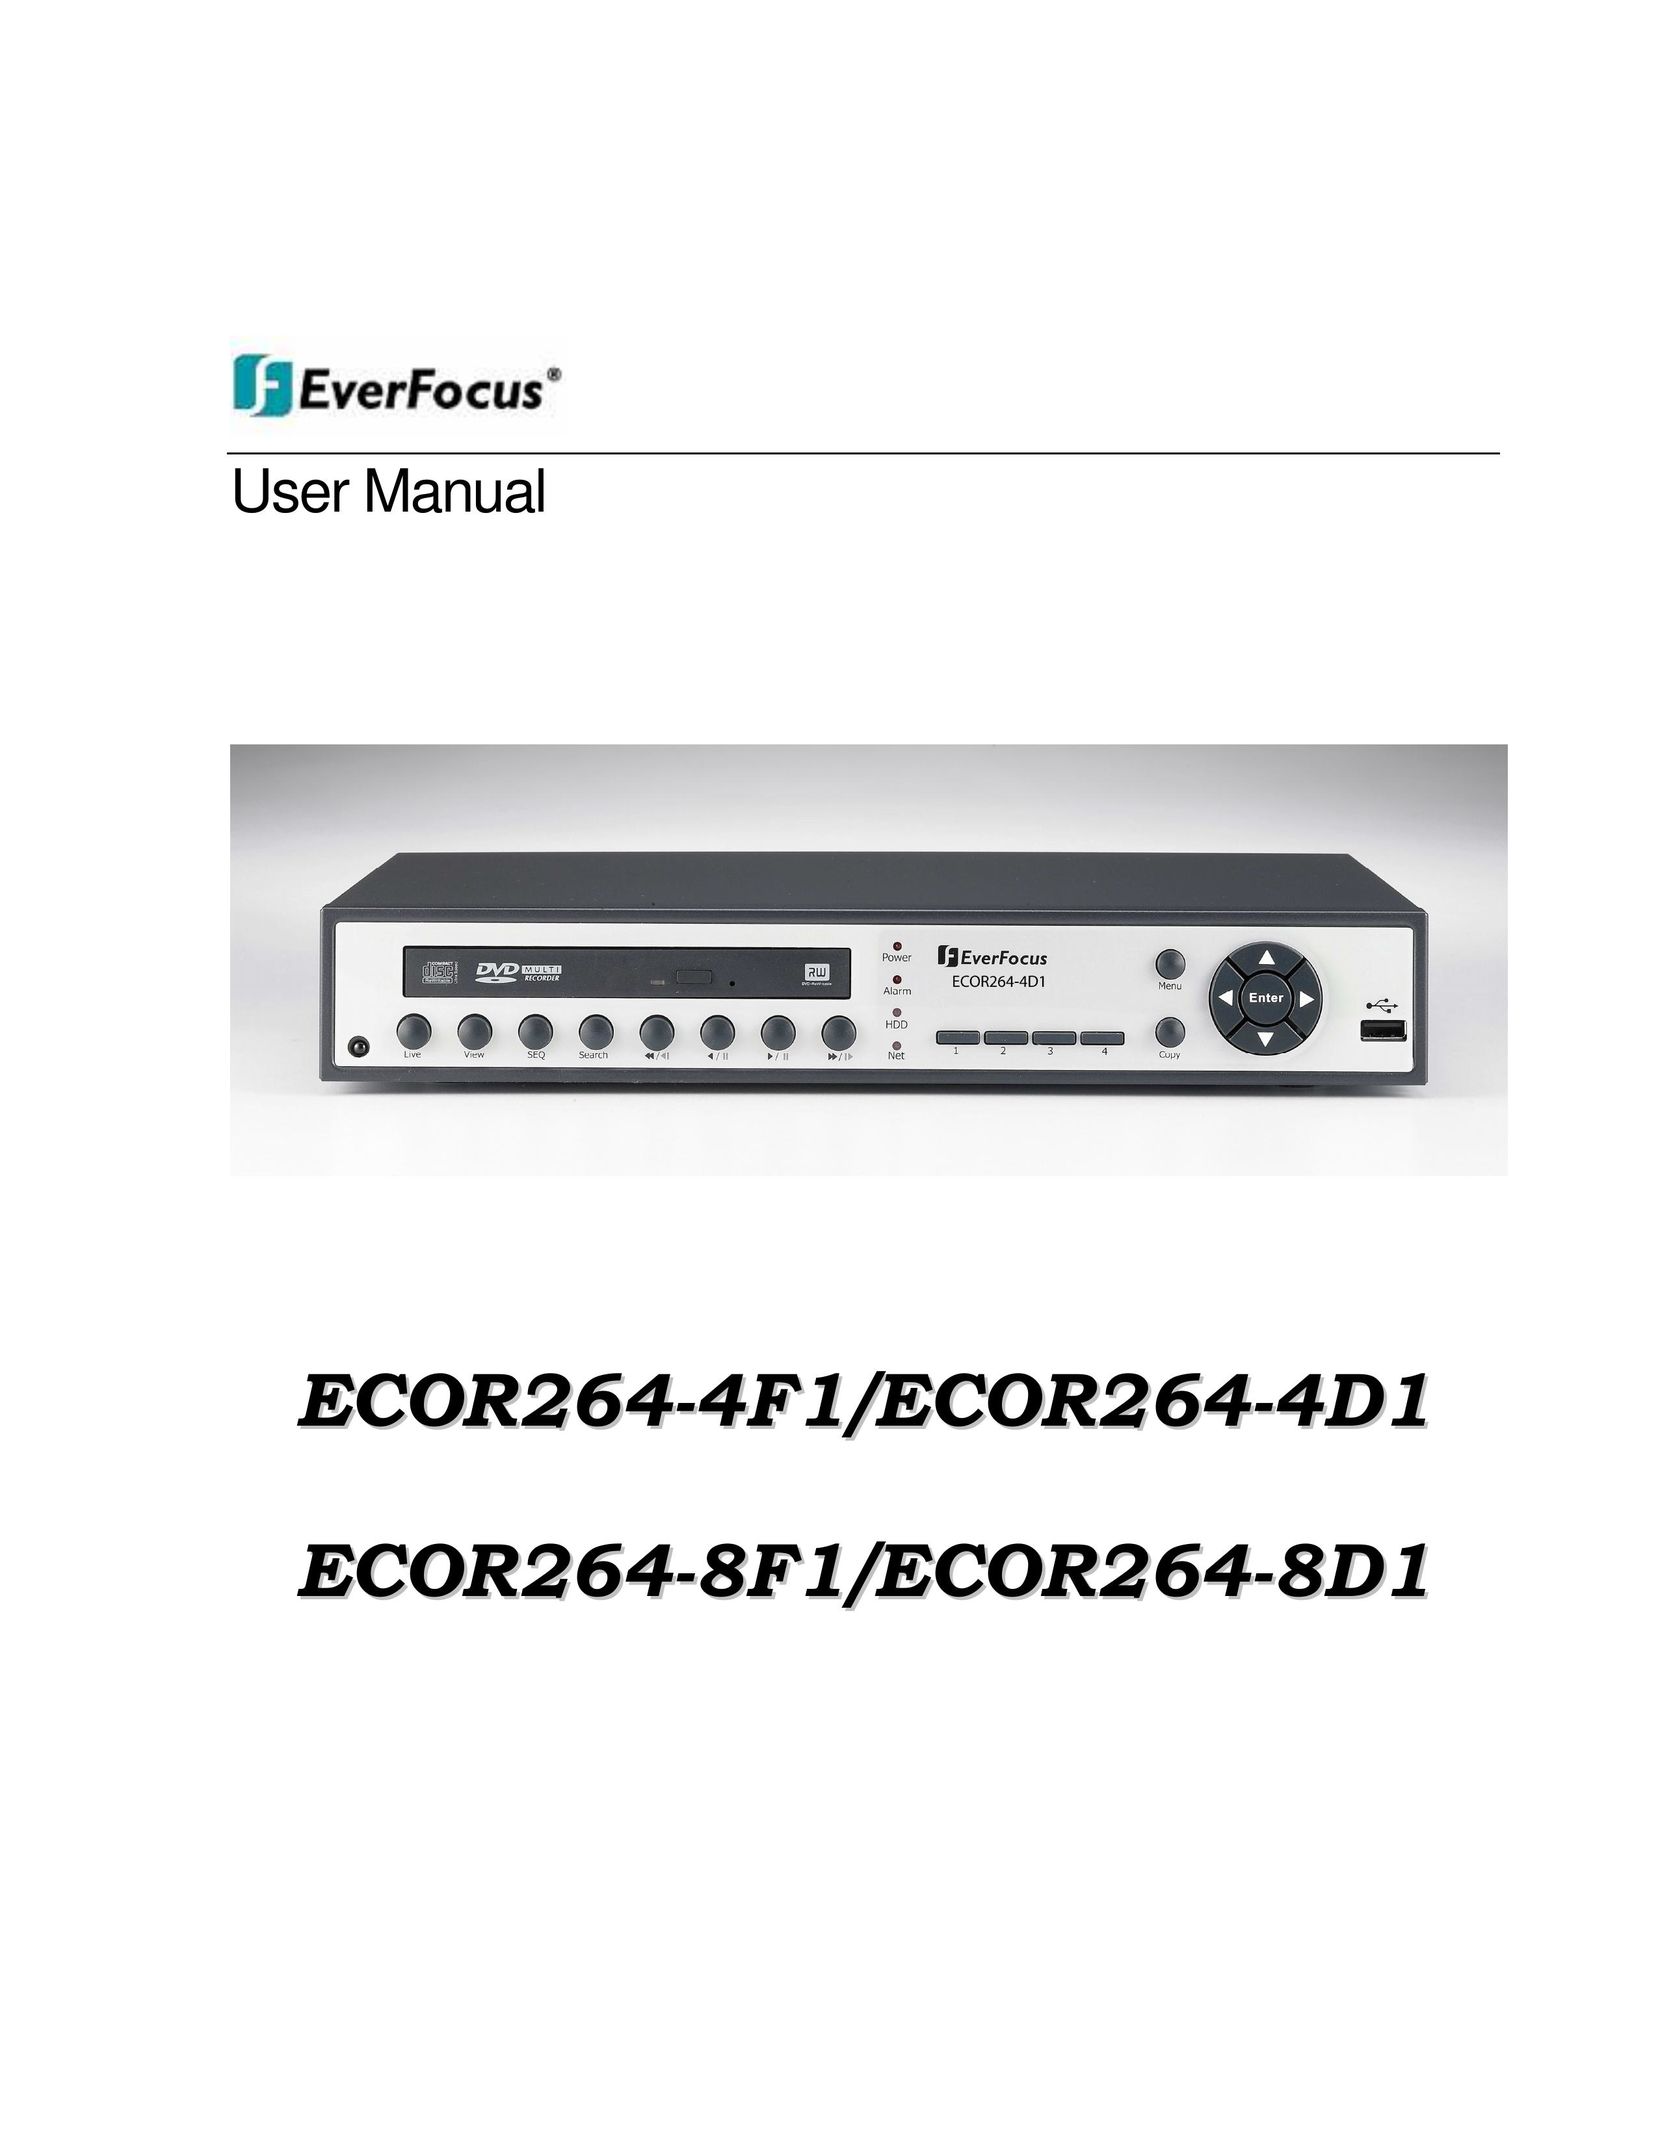 EverFocus ECOR264-8F1 DVR User Manual